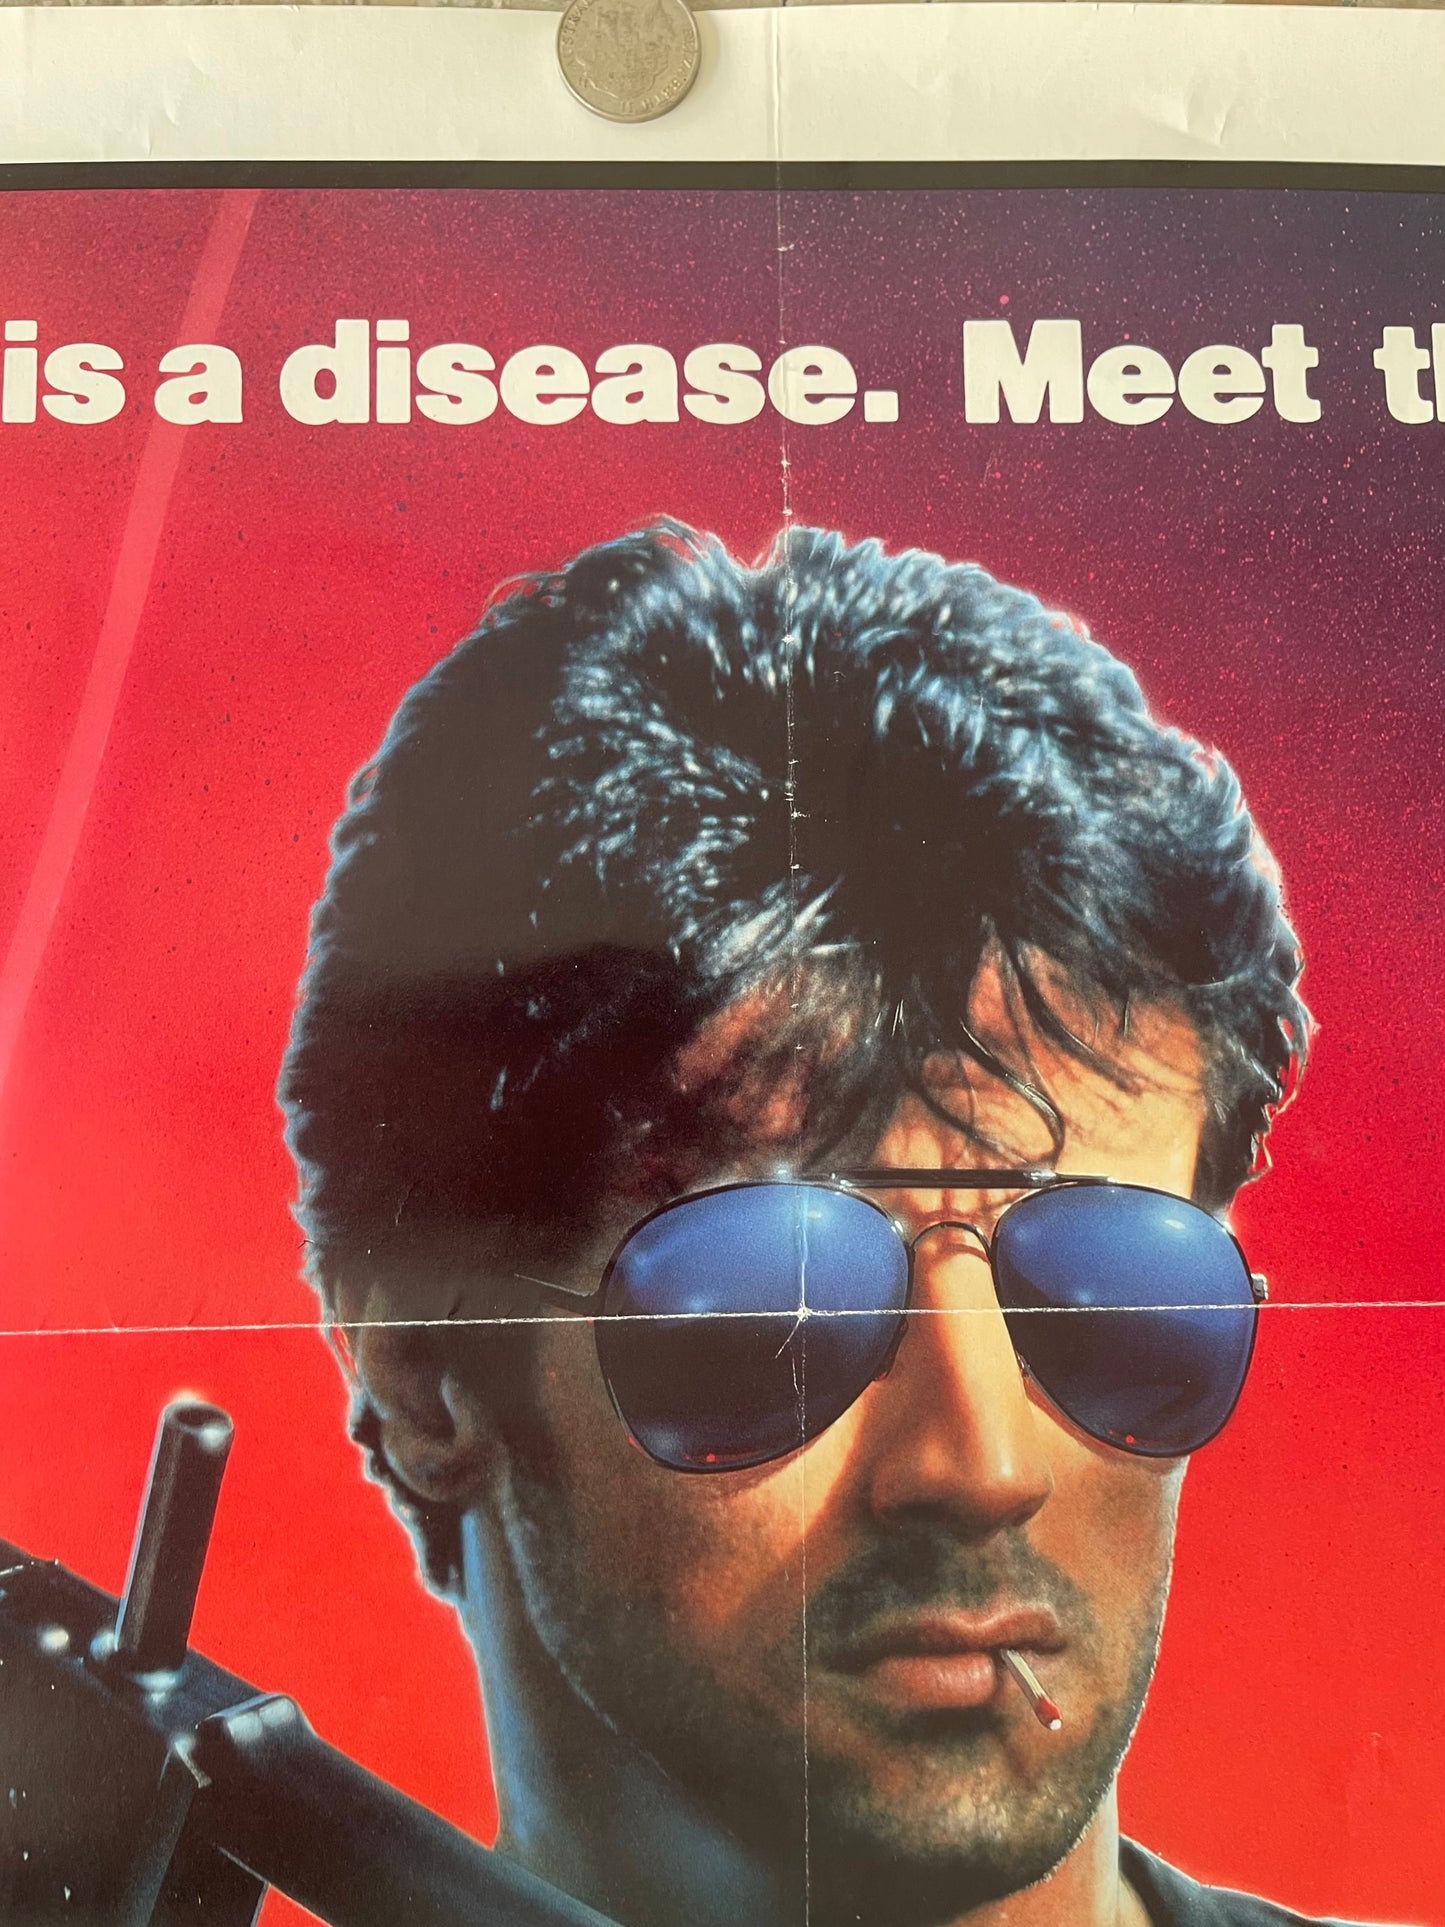 Cobra (1986) Sylvester Stallone - One Sheet